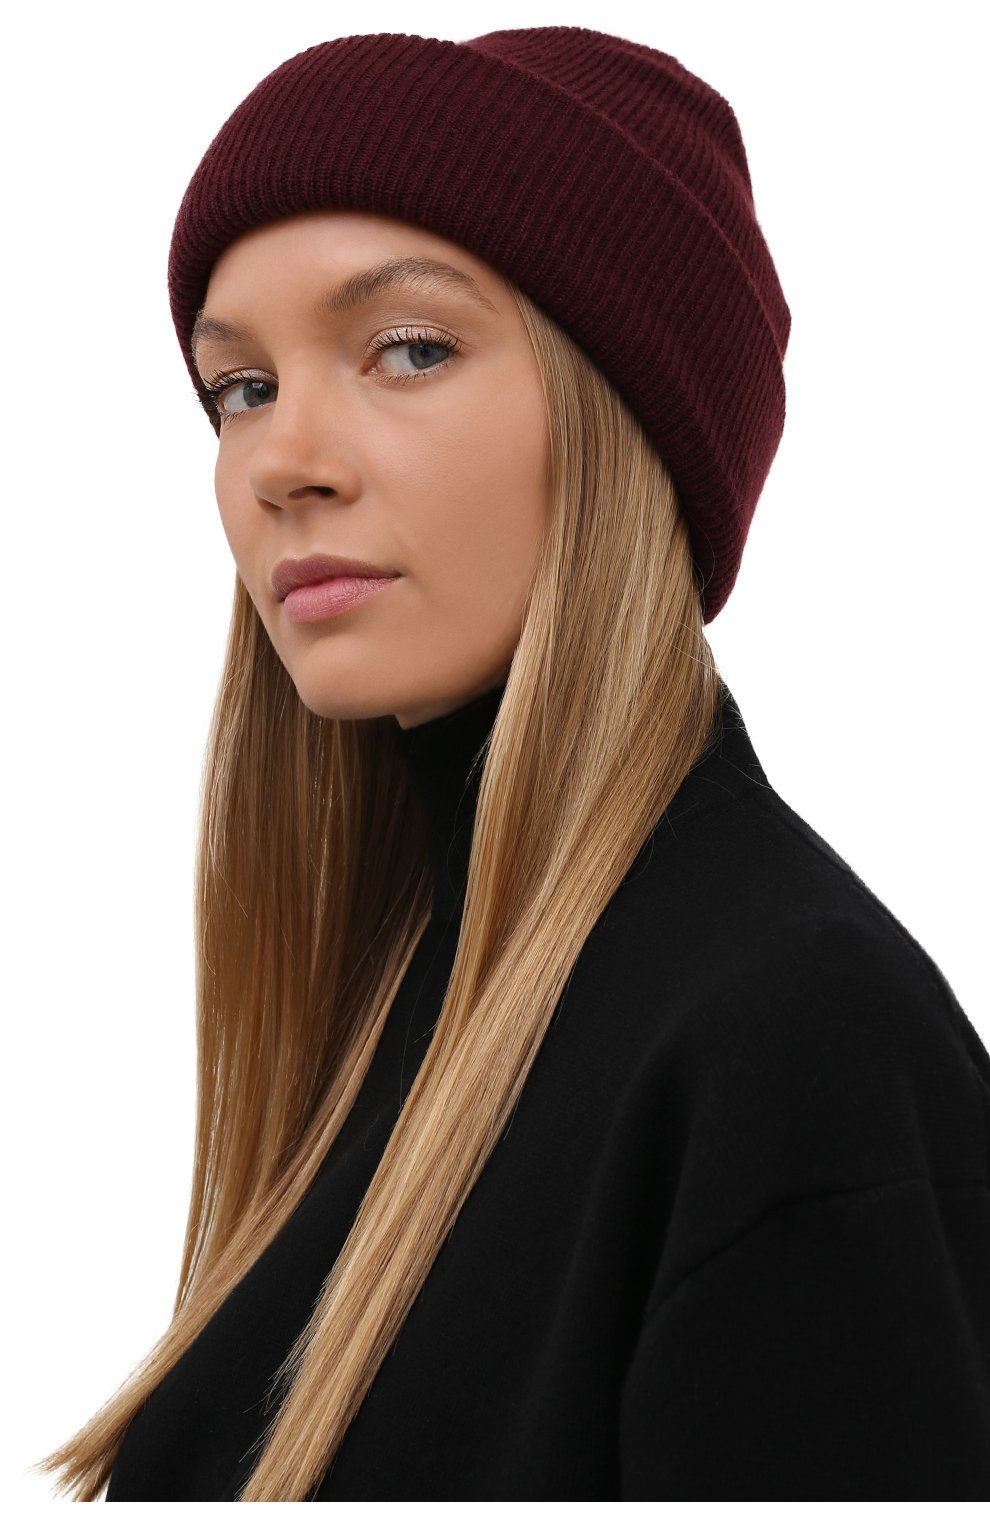 Женская шапка из шерсти и кашемира INVERNI бордового цвета, арт. 5364 CM | Фото 2 (Мате�риал: Текстиль, Кашемир, Шерсть)